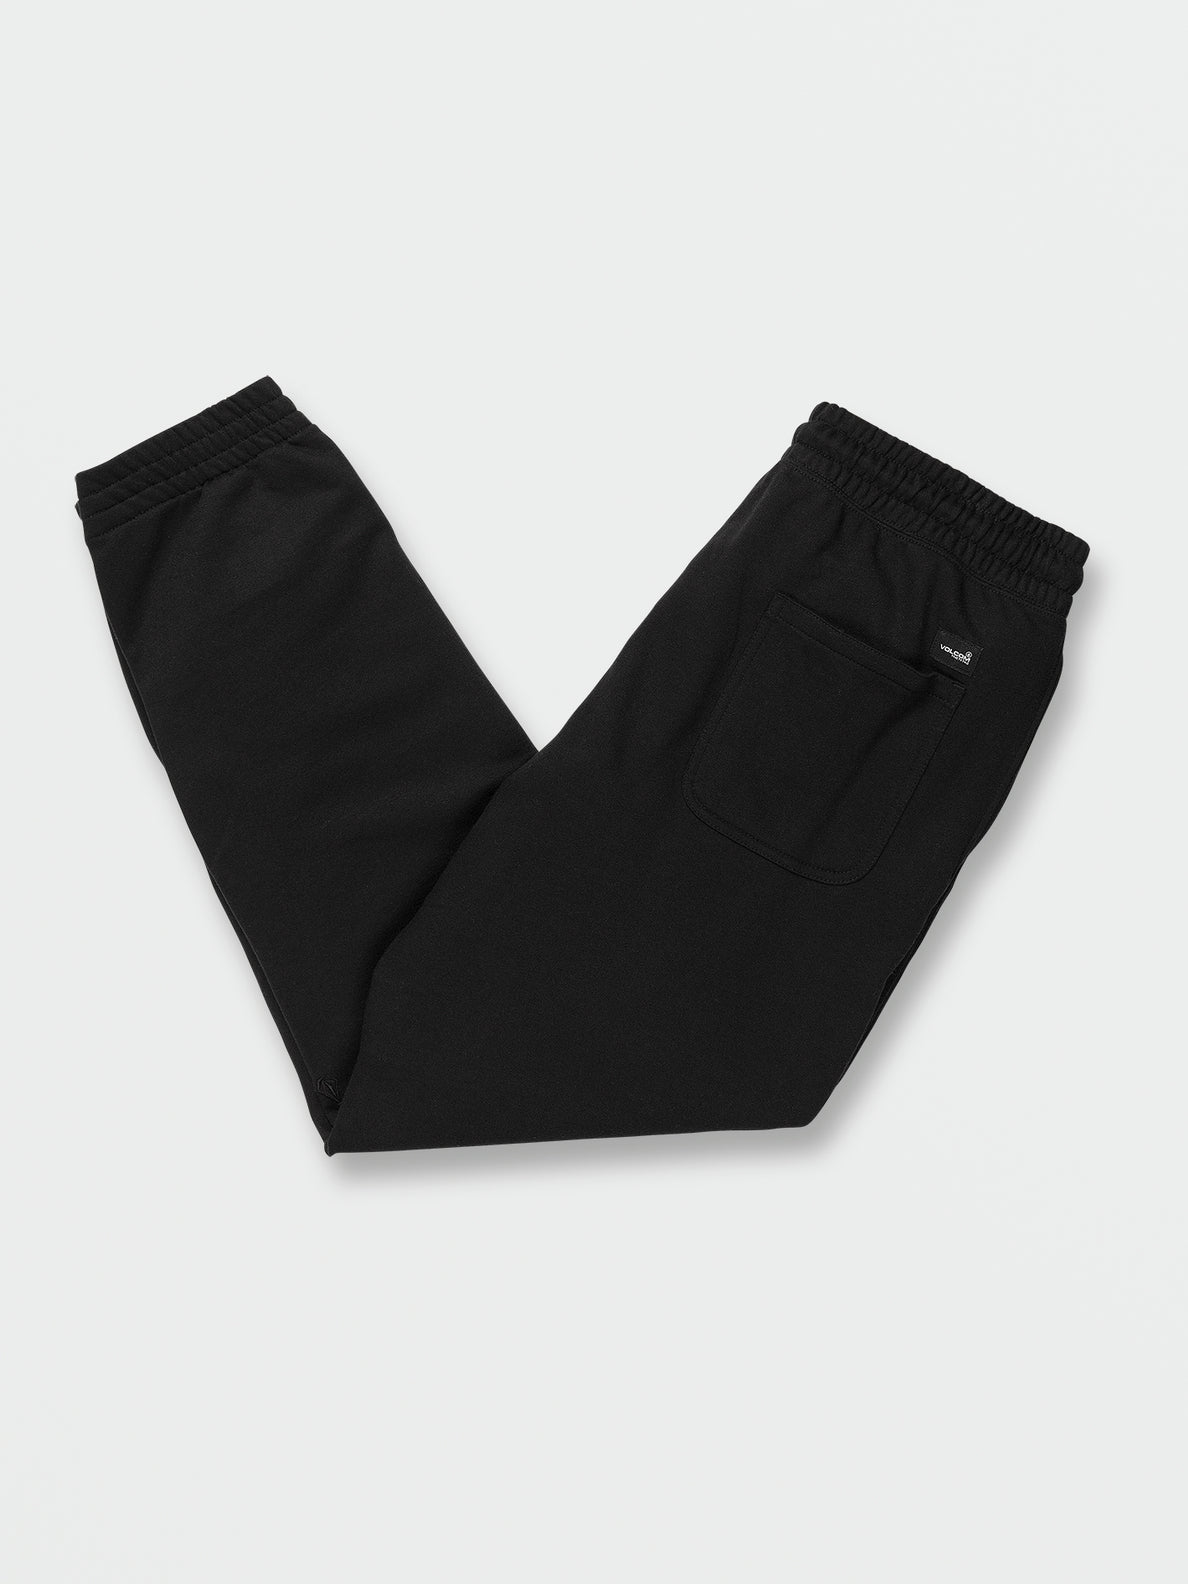 Black Friday Fleece Pants - Black (A1242202_BLK) [B]